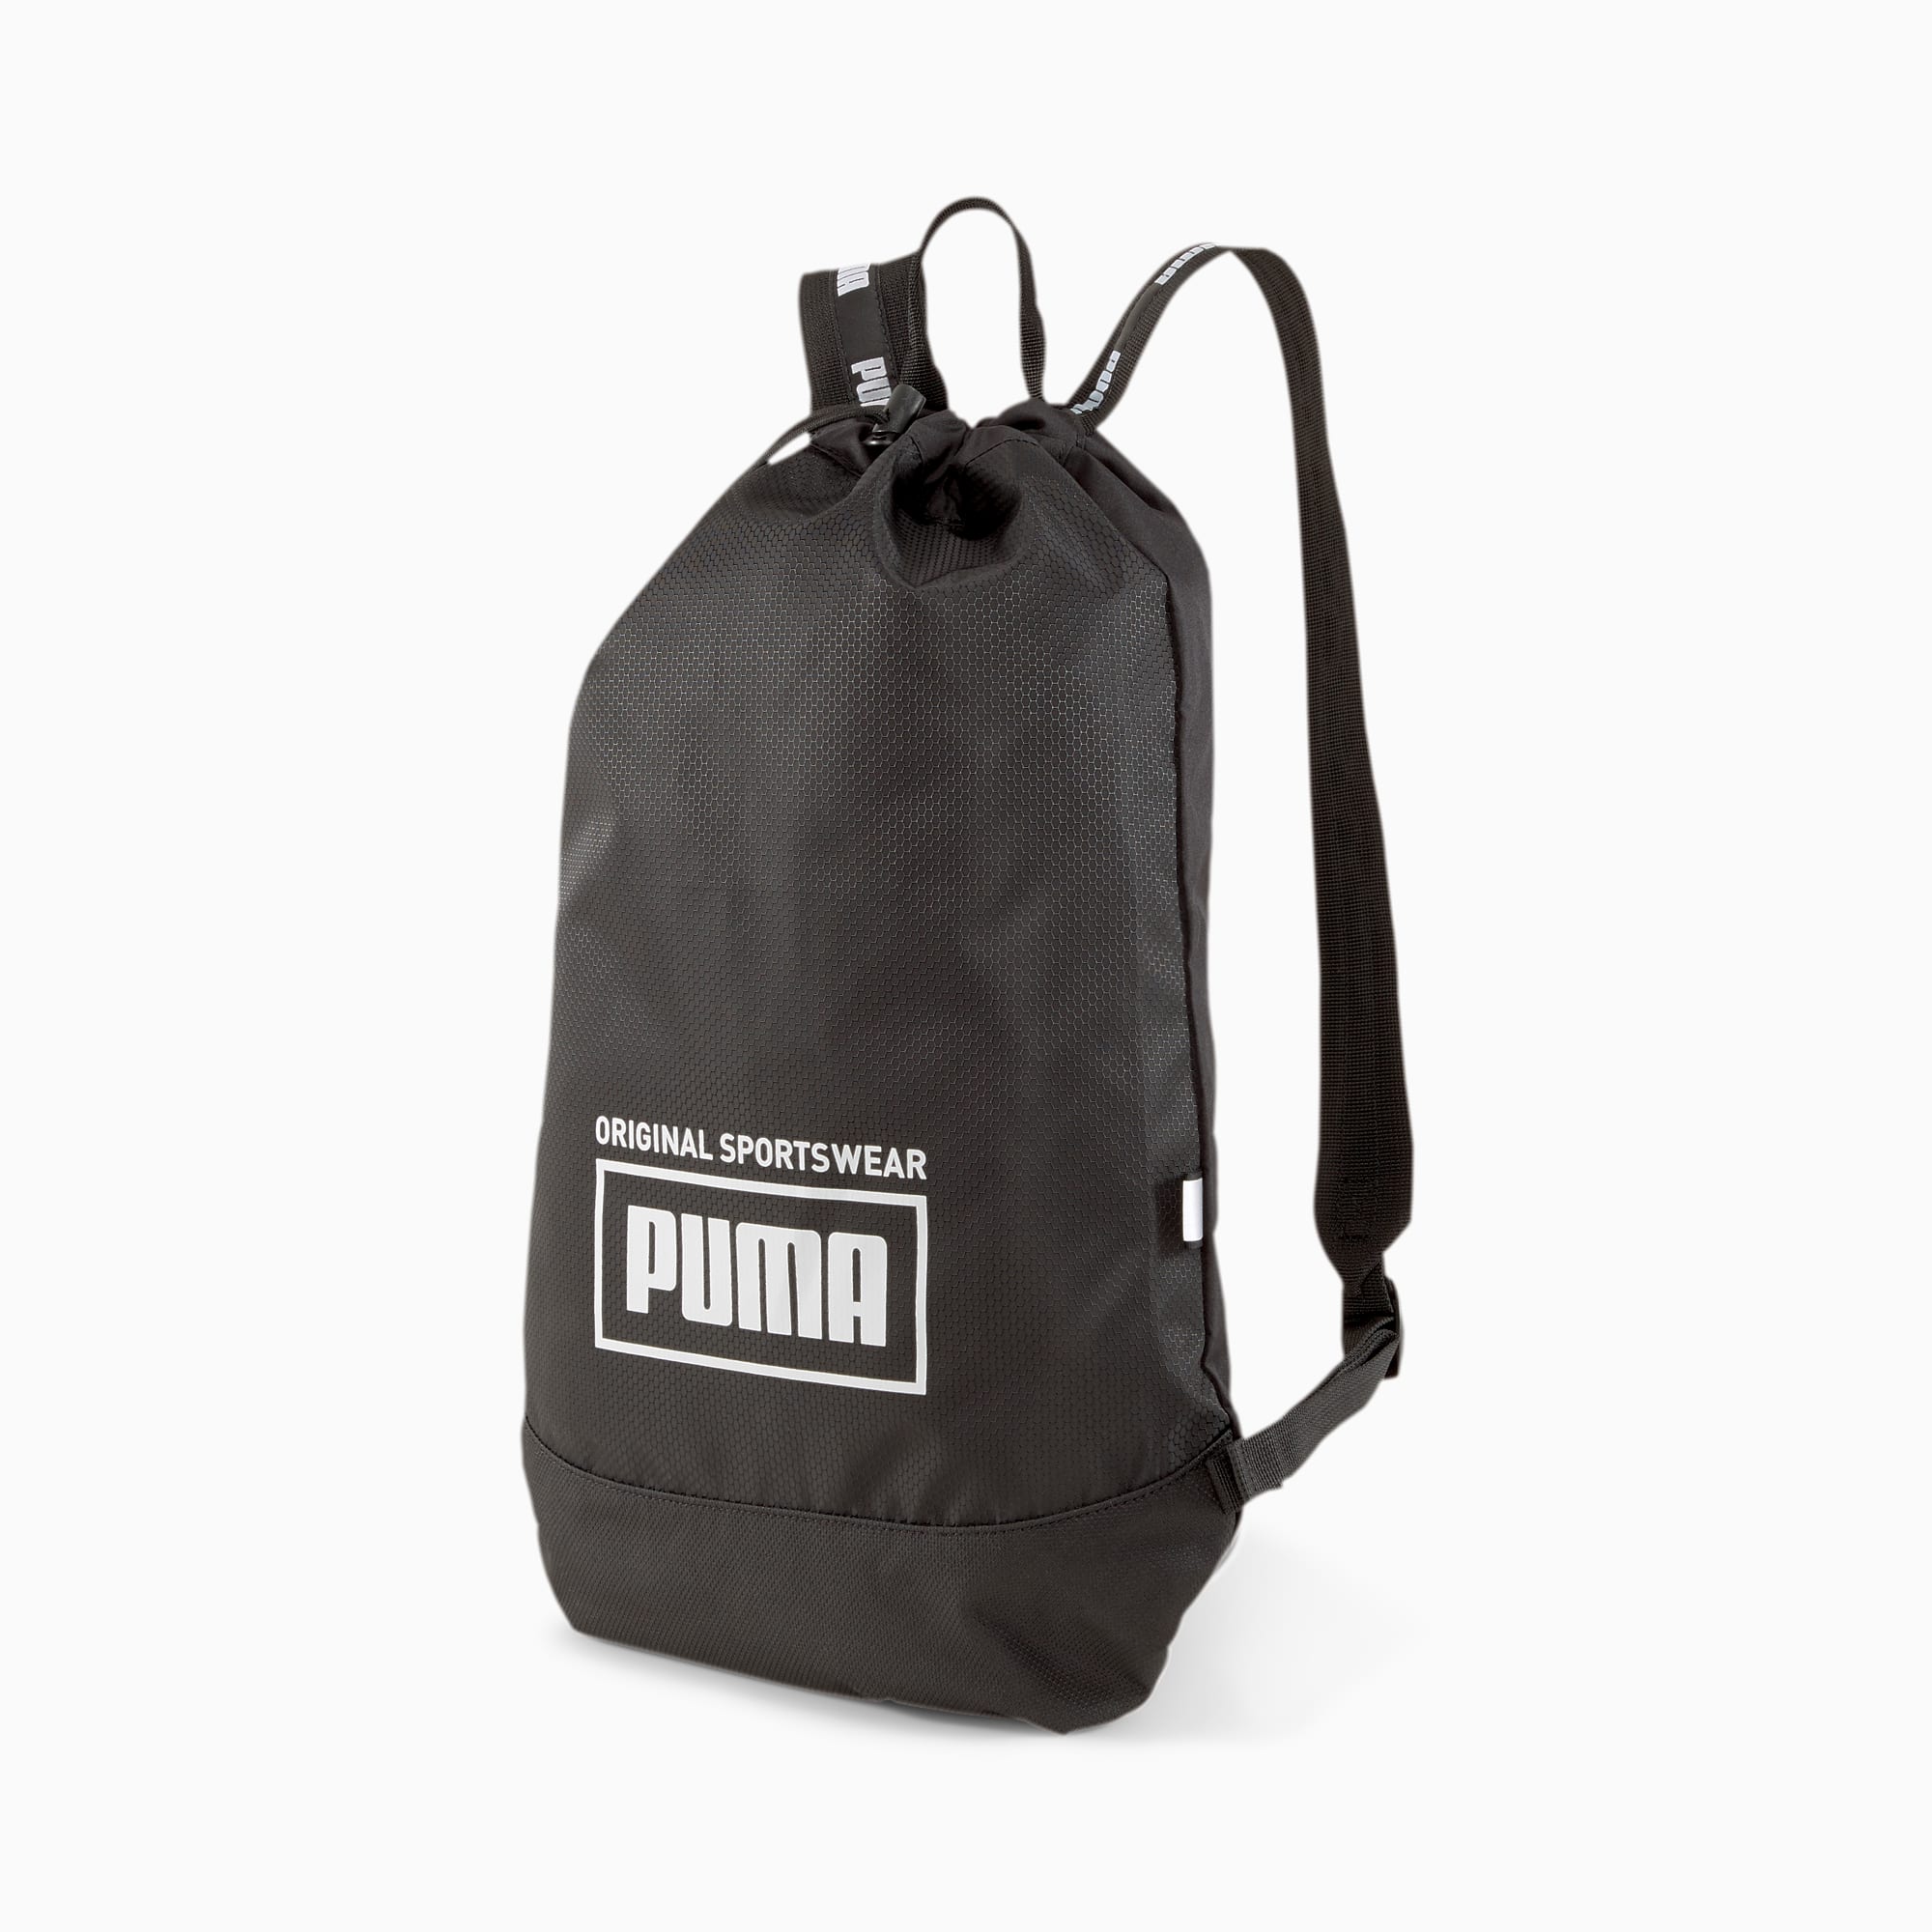 puma carry bags